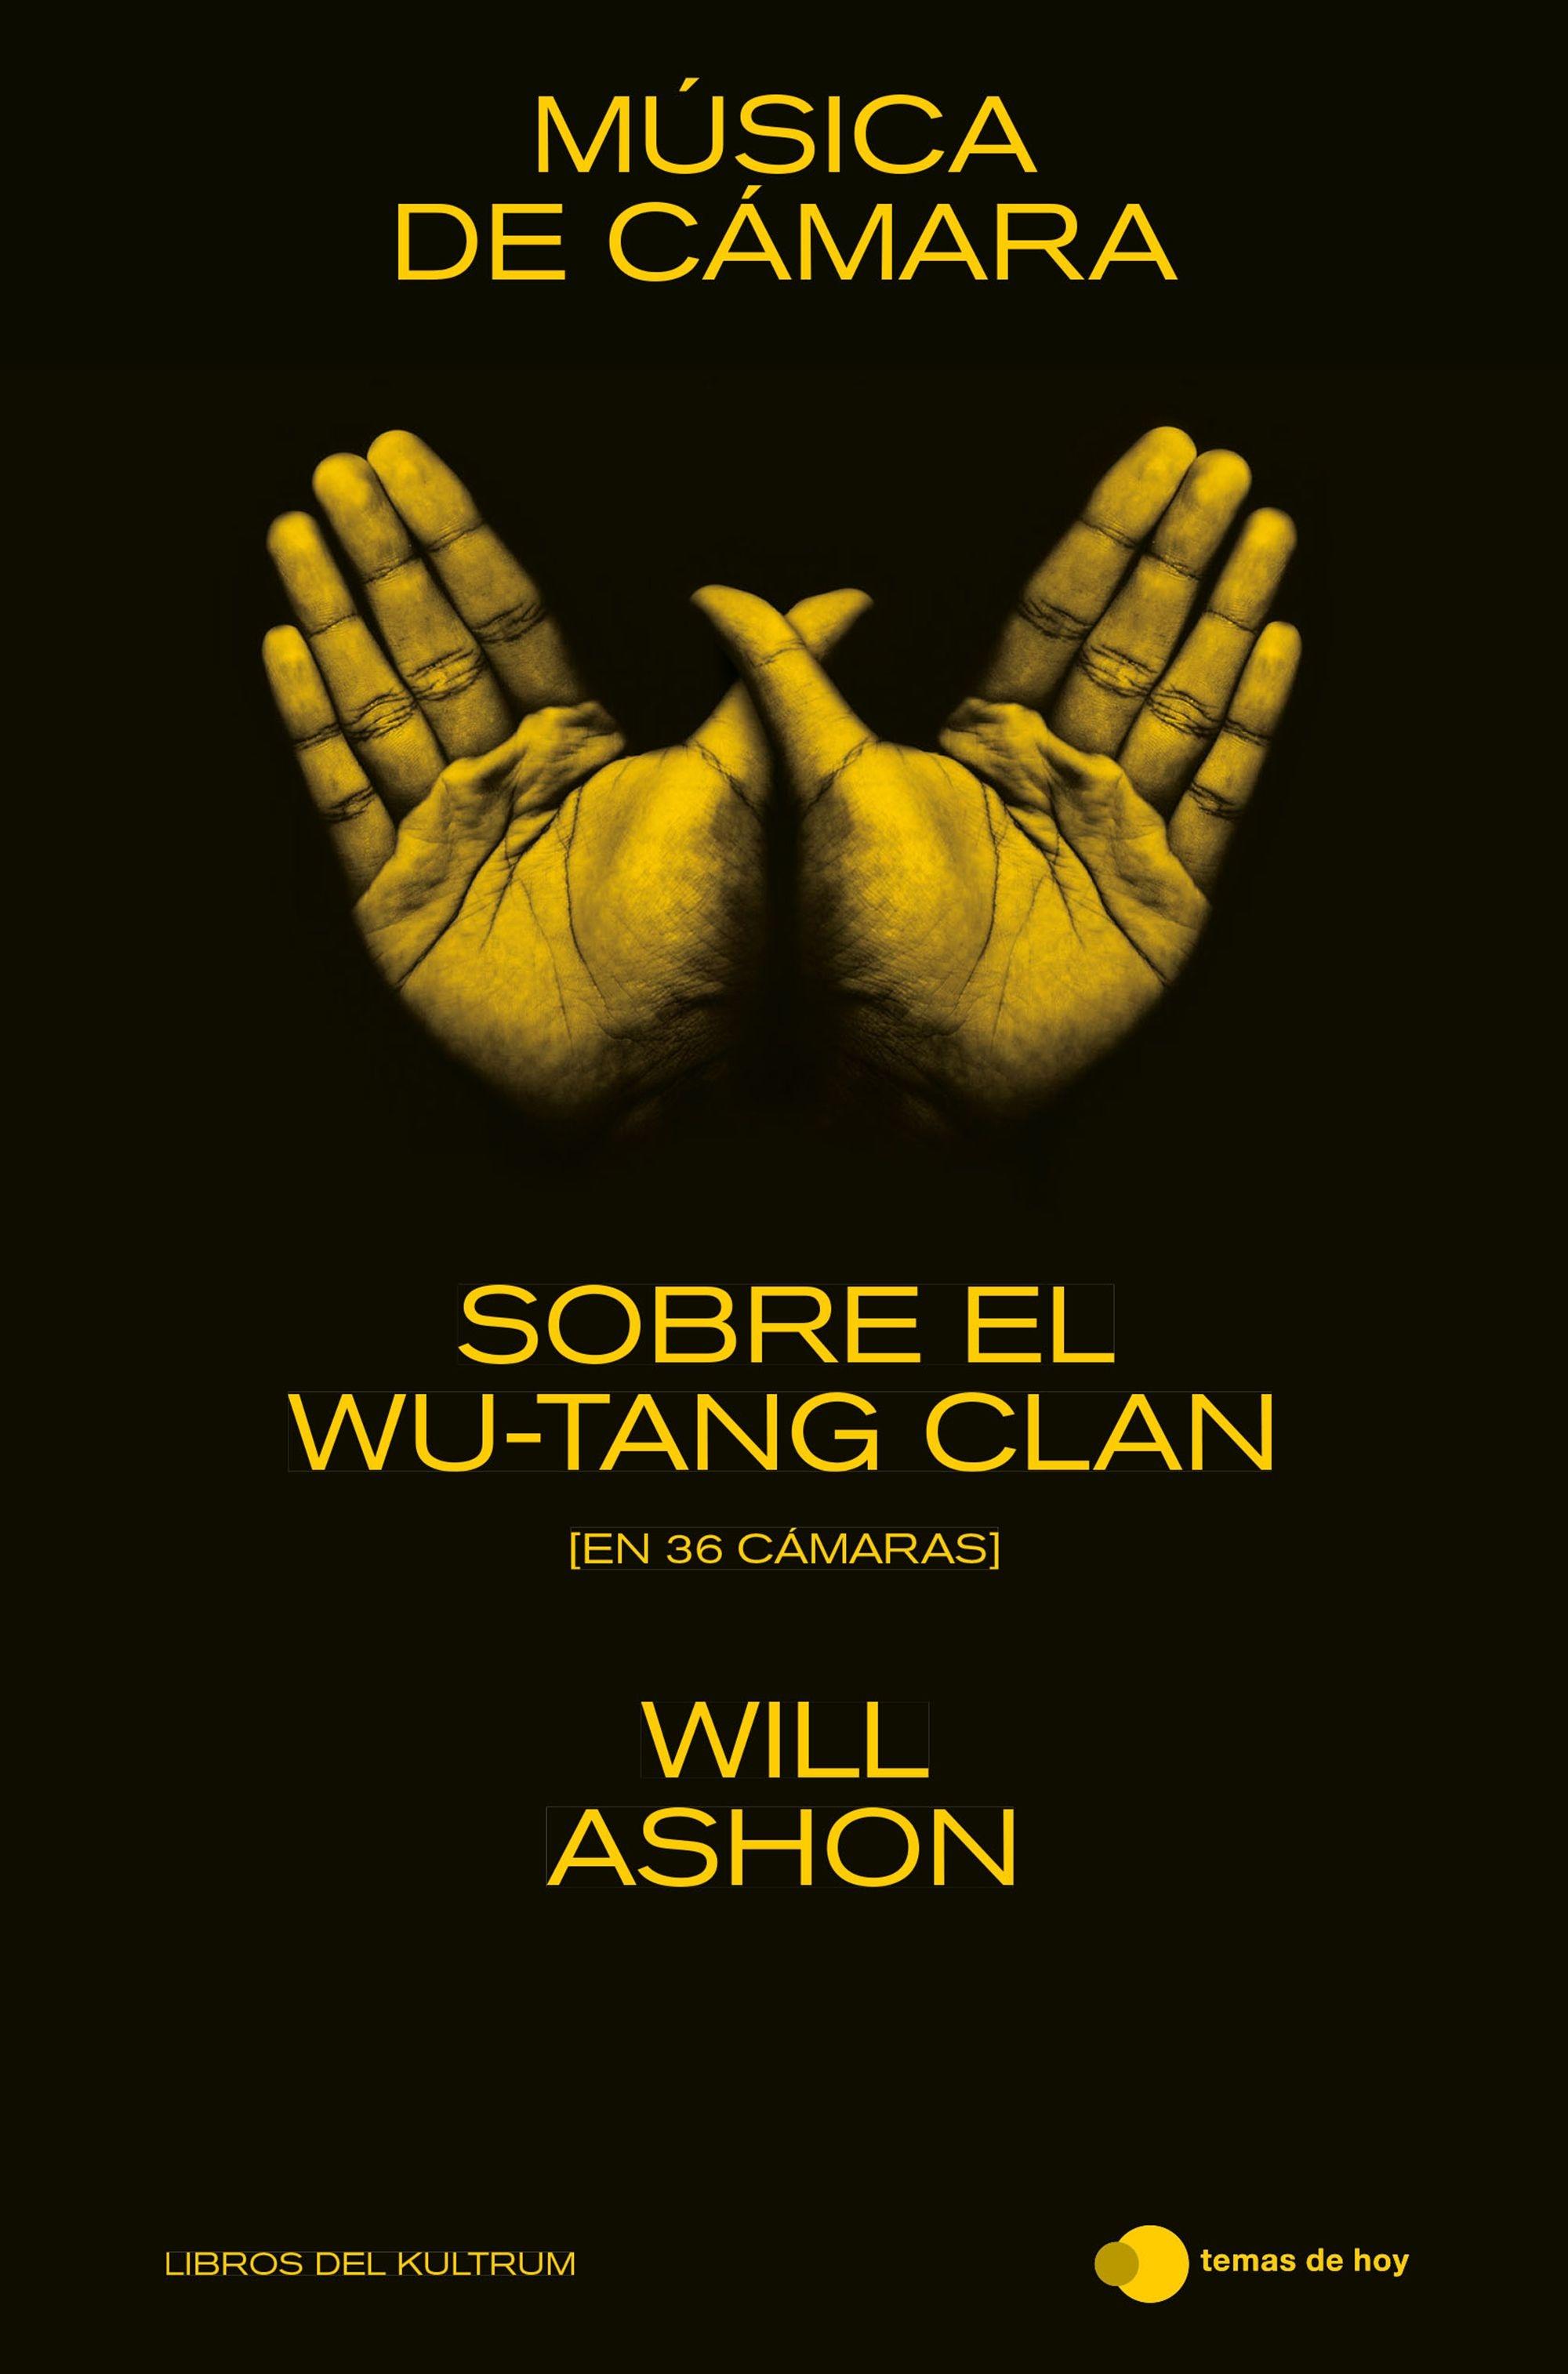 Música de cámara "Sobre el Wu-Tang Clan (en 36 cámaras)". 